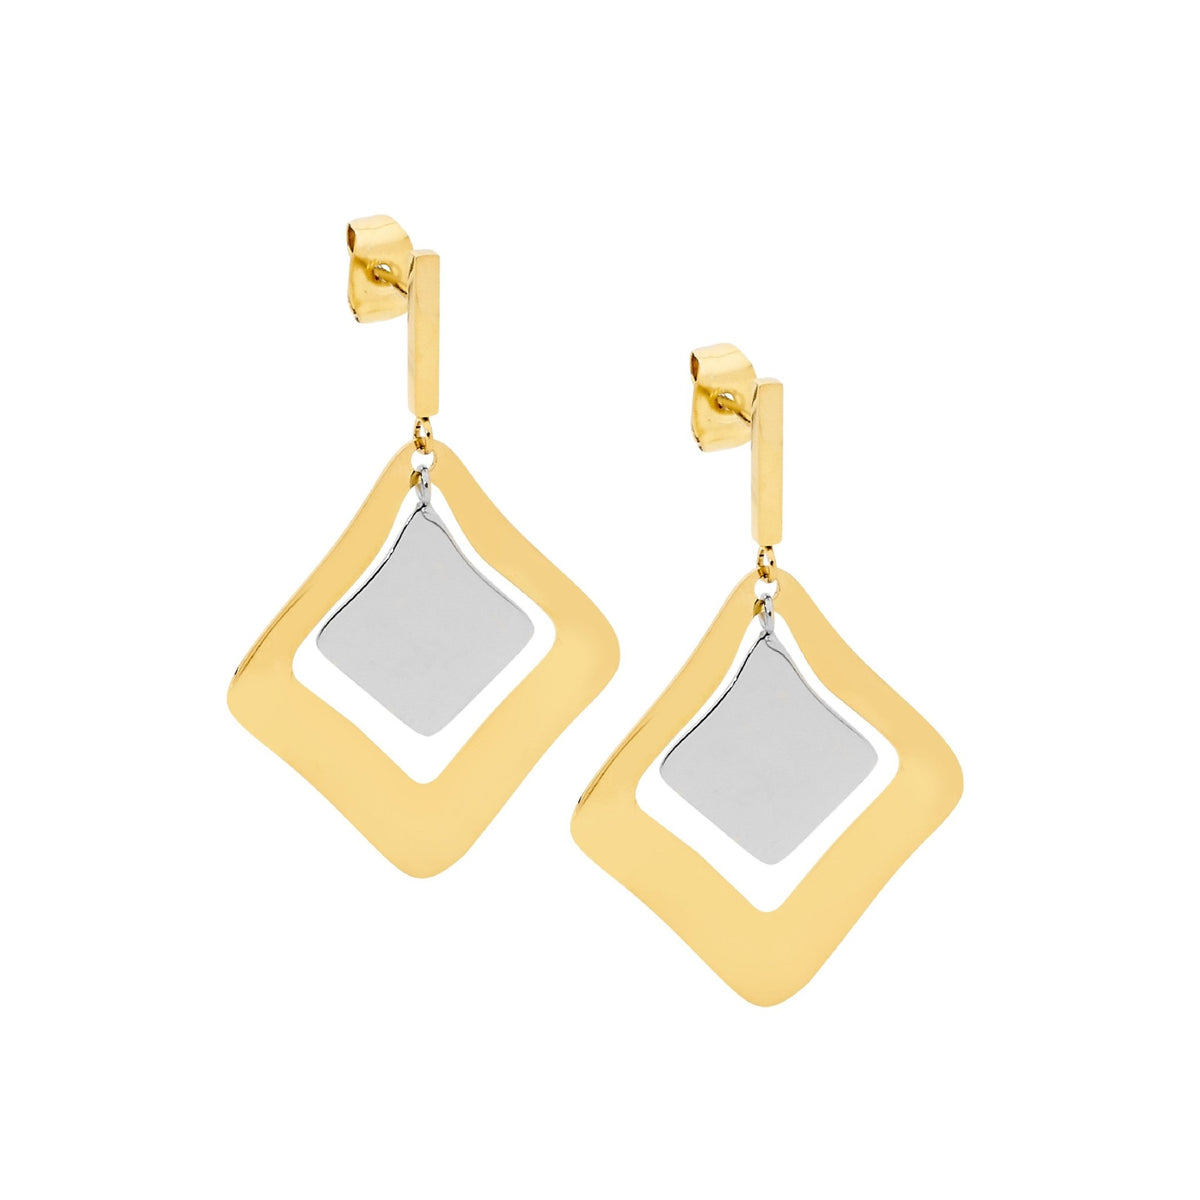 Stainless Steel Earring Gold - SE231G - Markbridge Jewellers